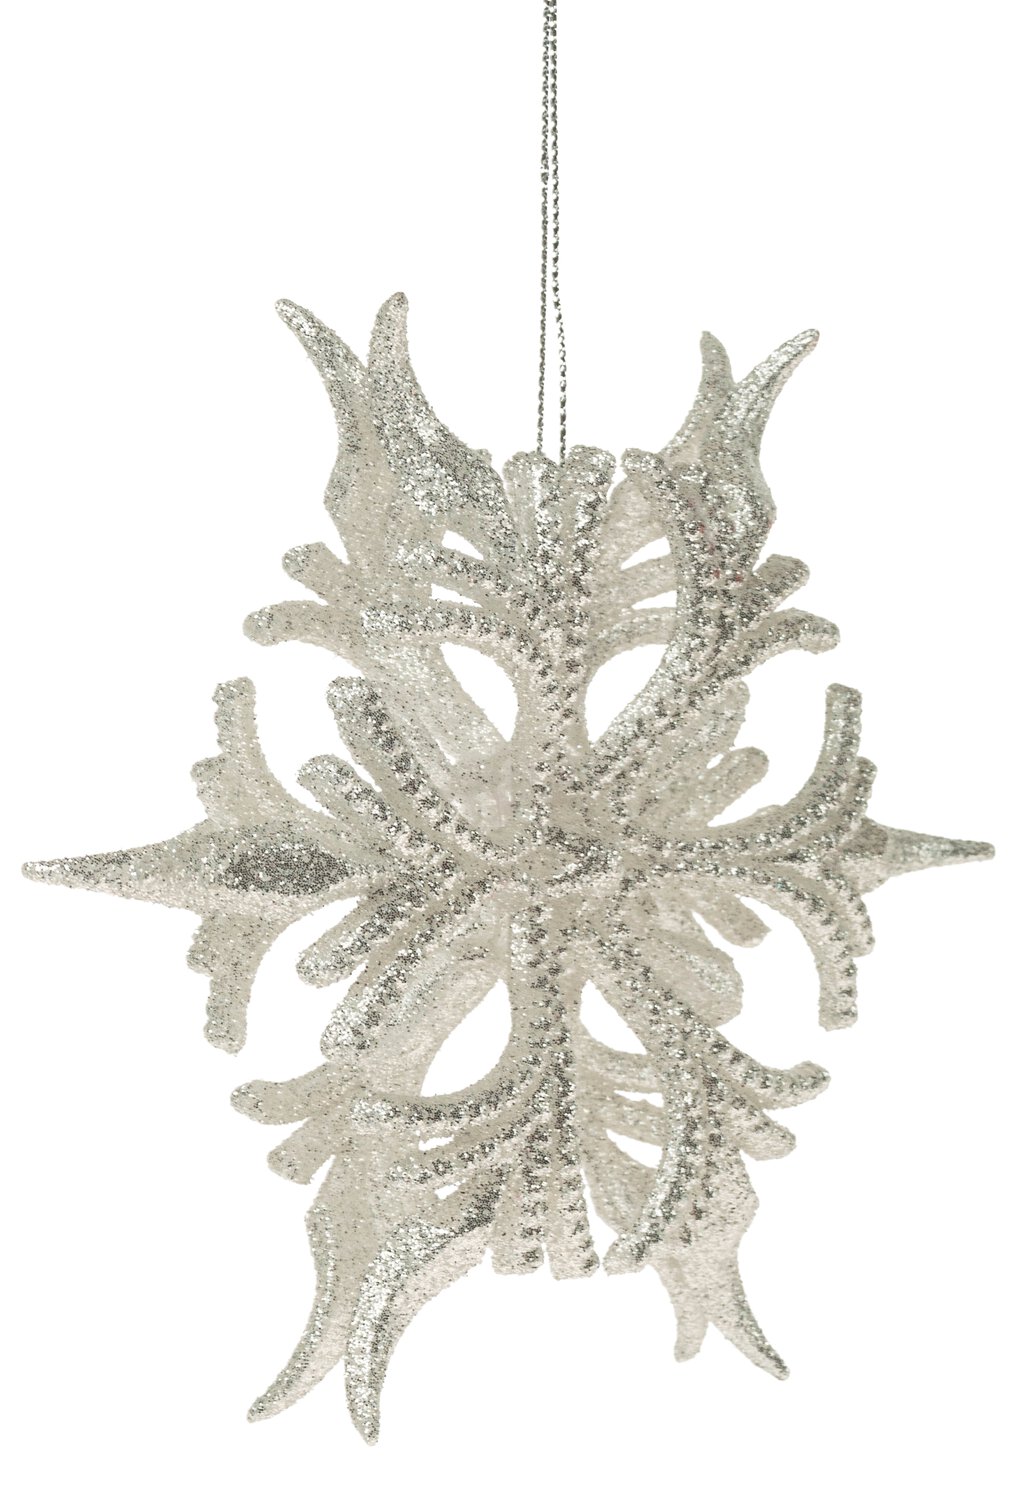 Cristallo di neve decorativo in acrilico, 2 pezzi, Ø 13 cm, argento